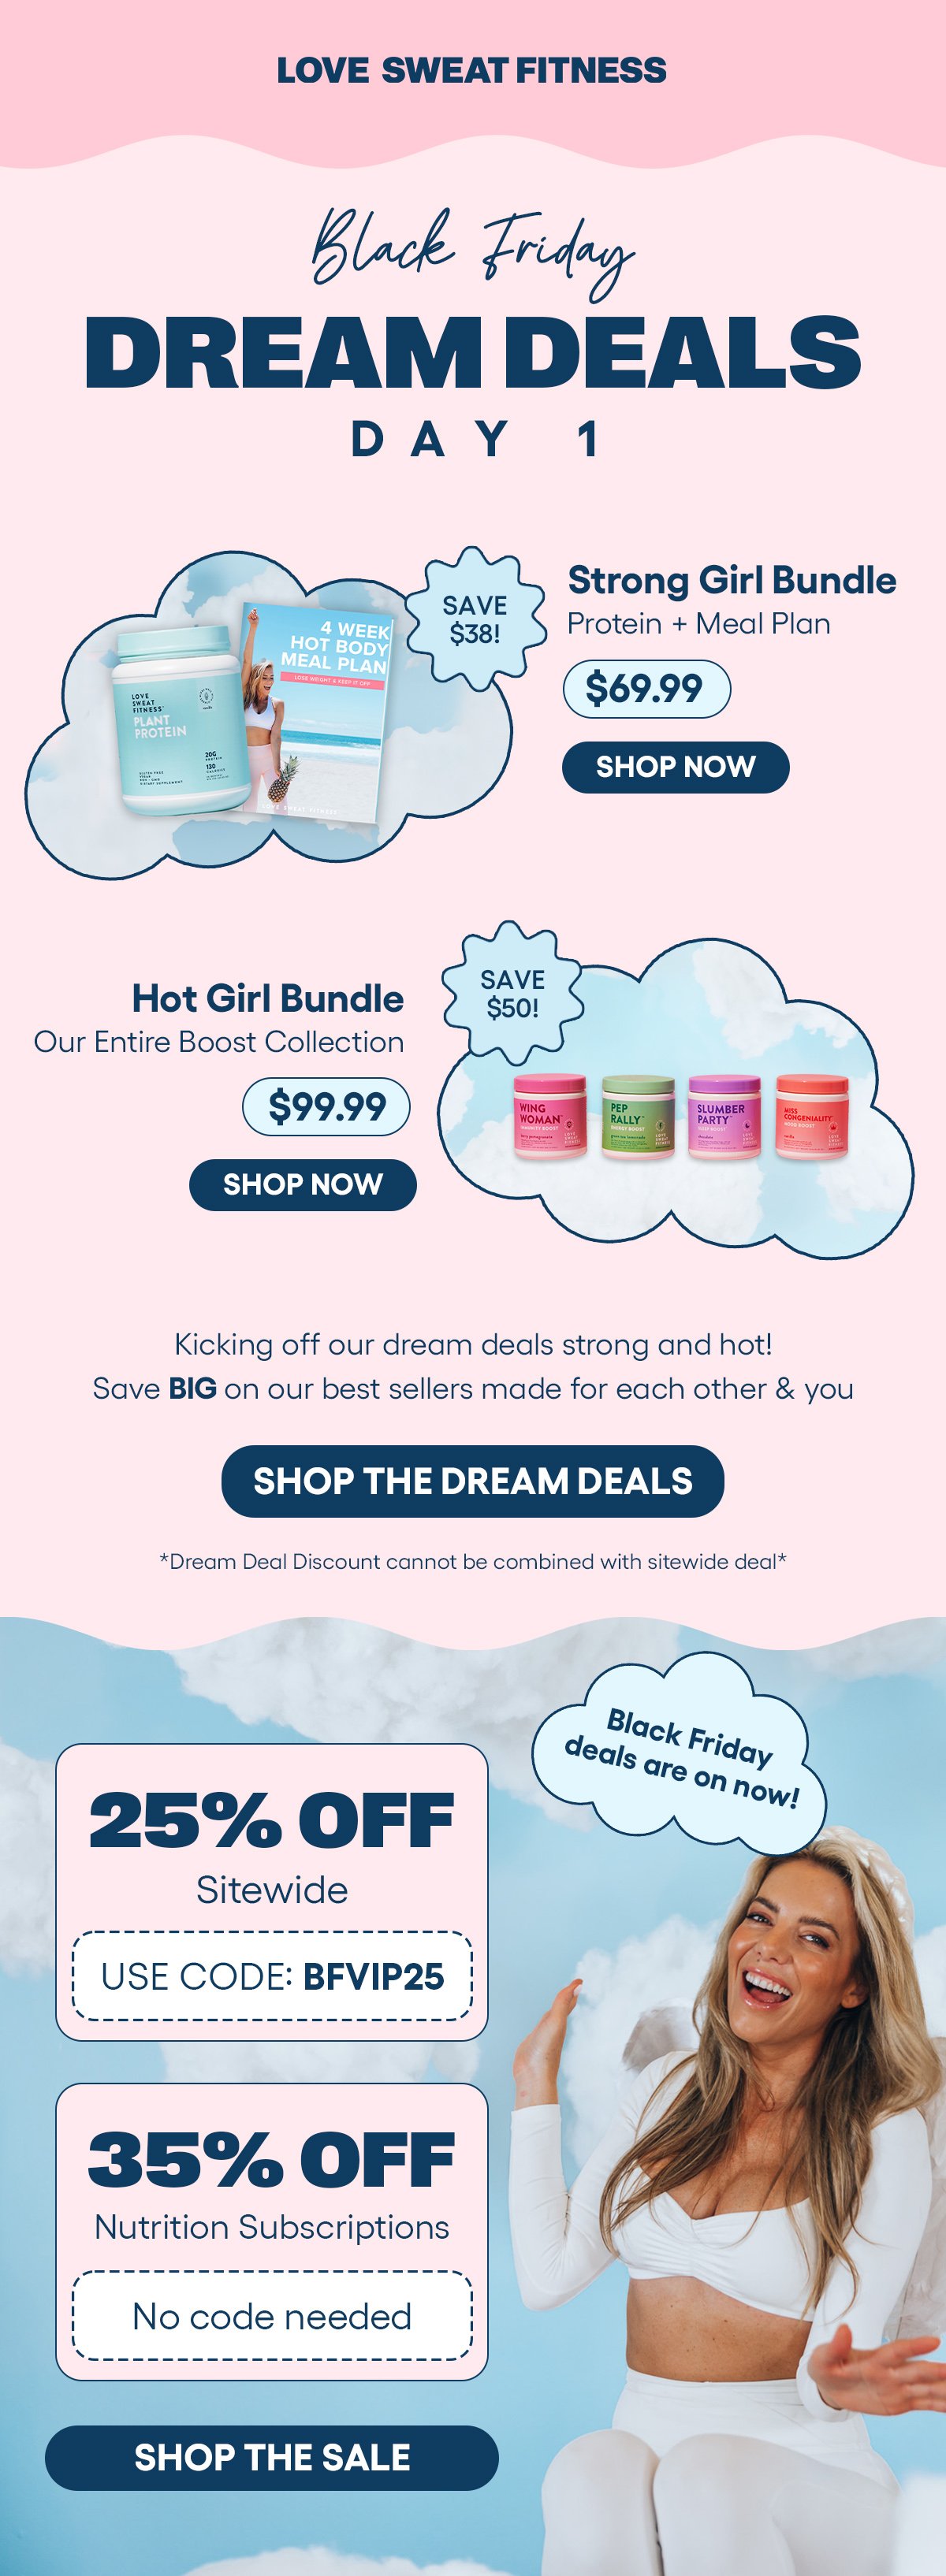 Dream Deal #1 (Strong:Hot Girl Bundles).jpg